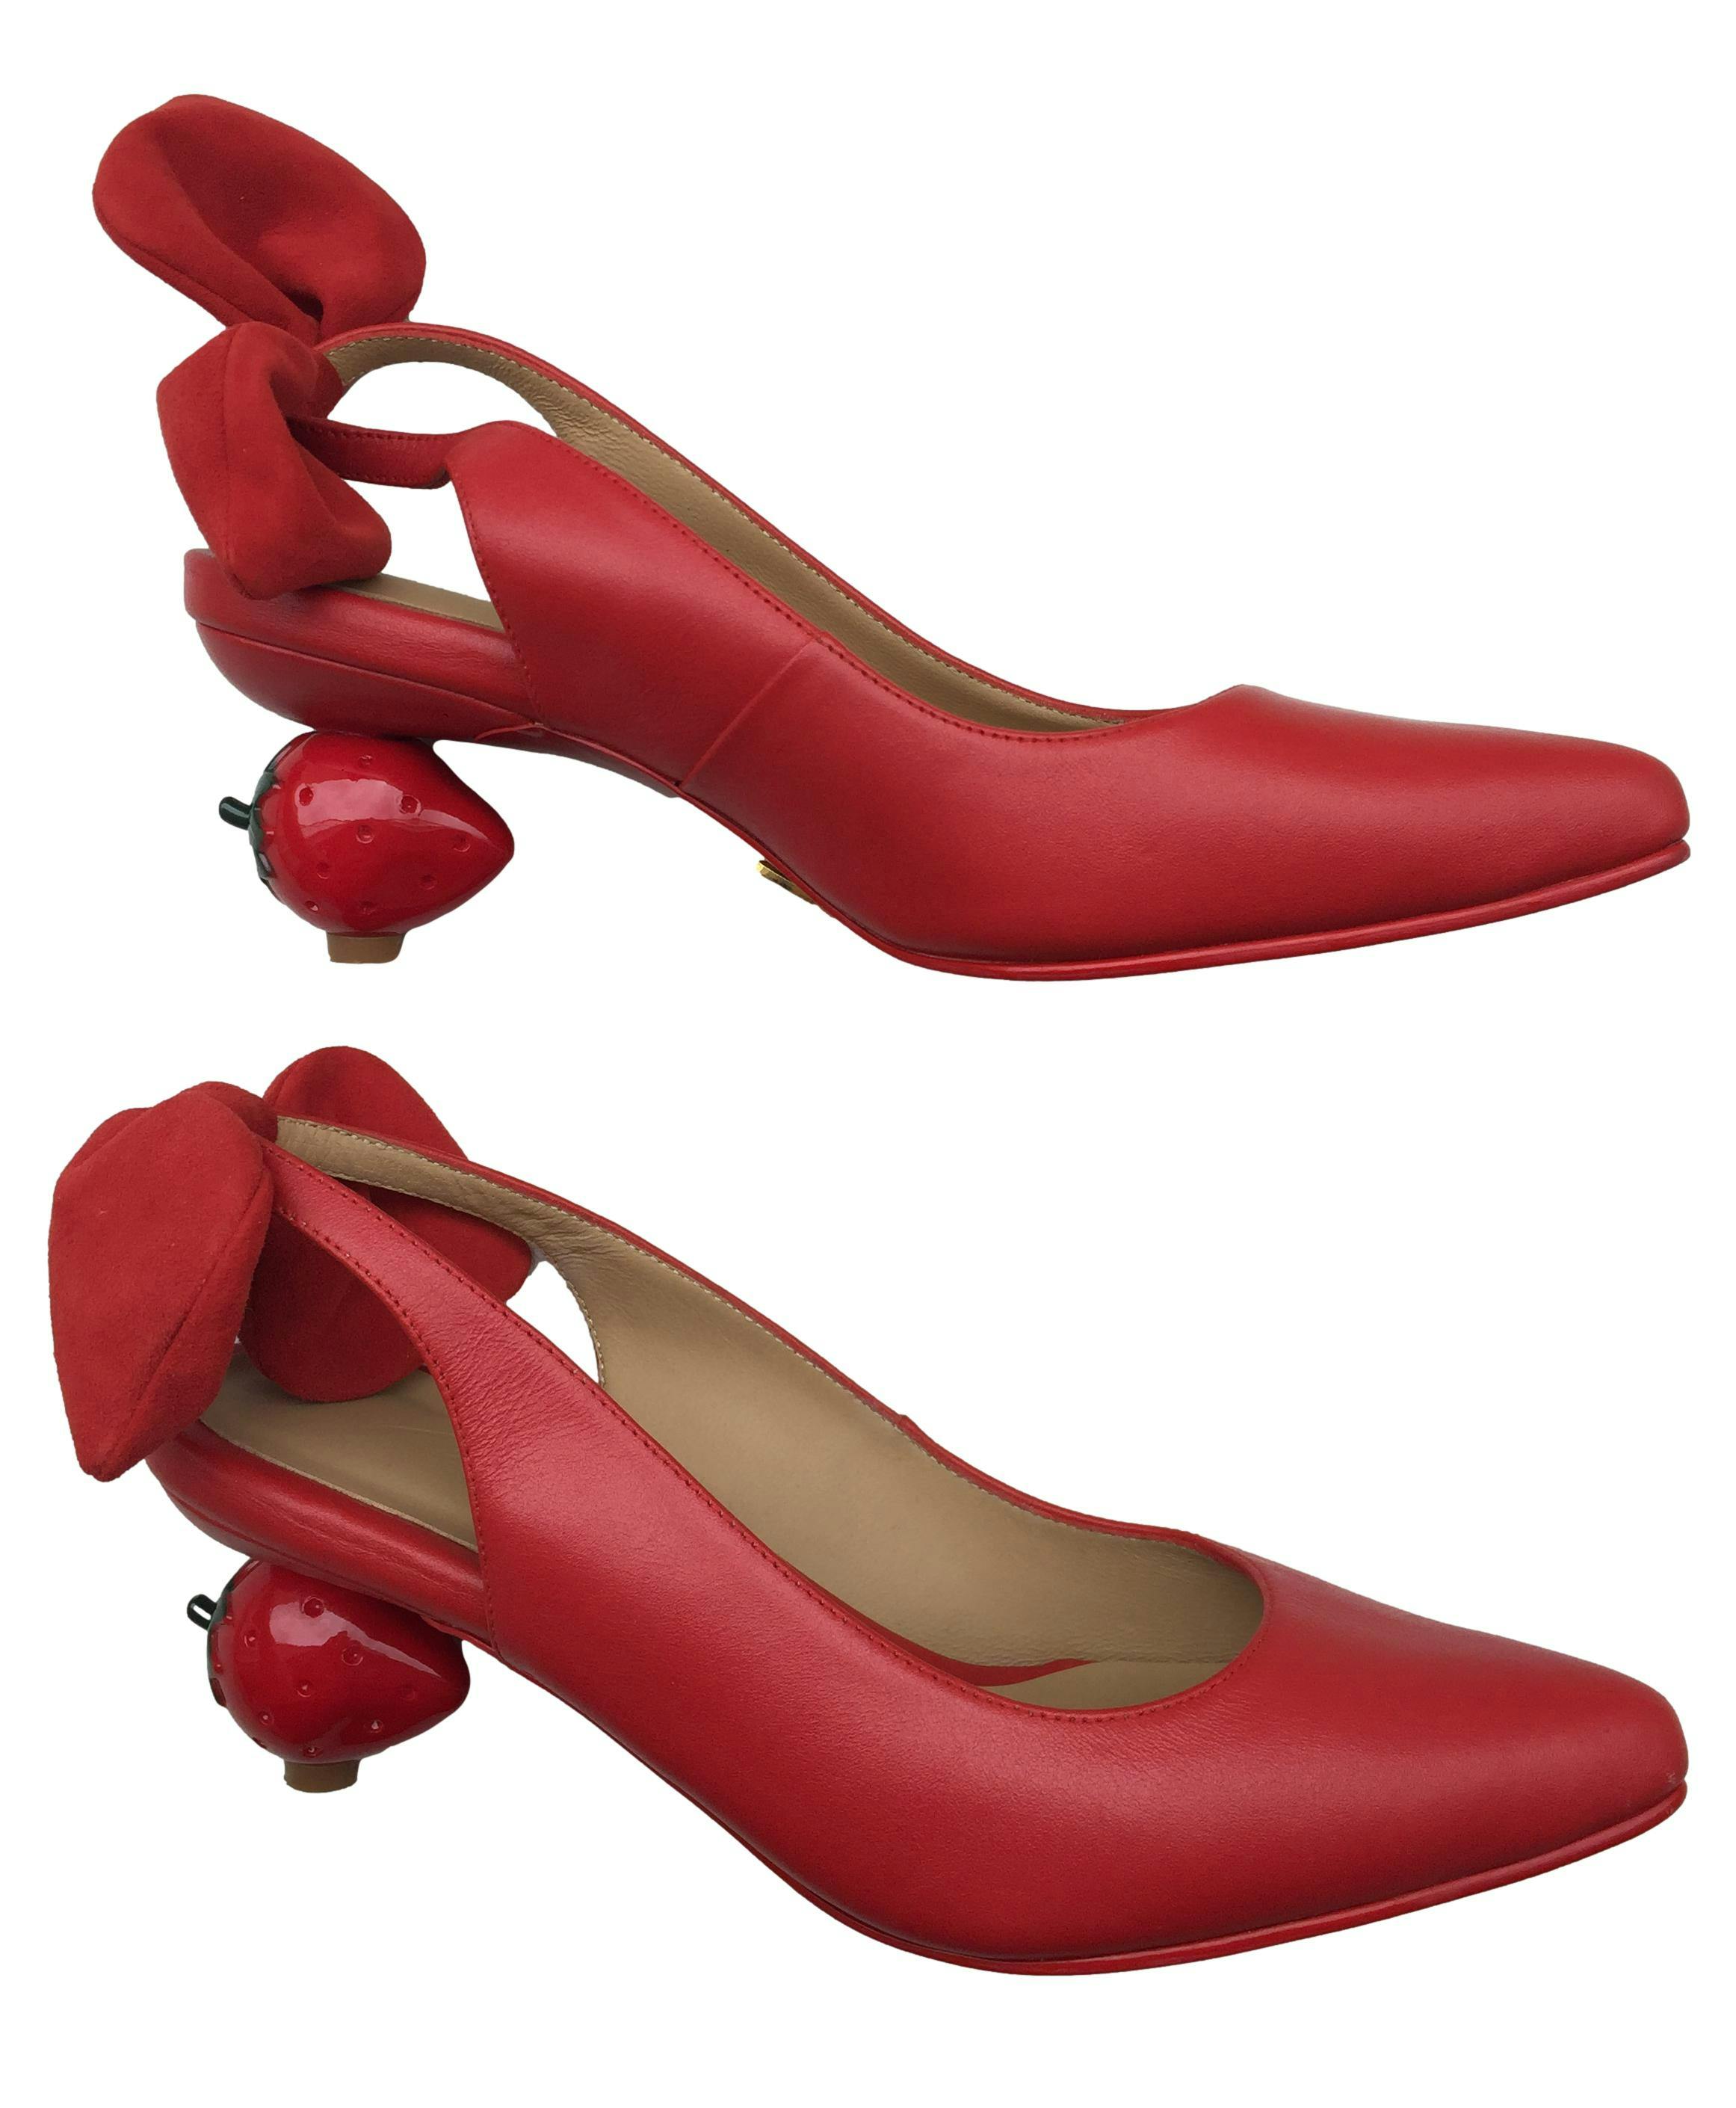 Zapatos rojos de cuero, detalles de lazo rojo en talón abierto, taco en forma de fresa. Precio Original 550